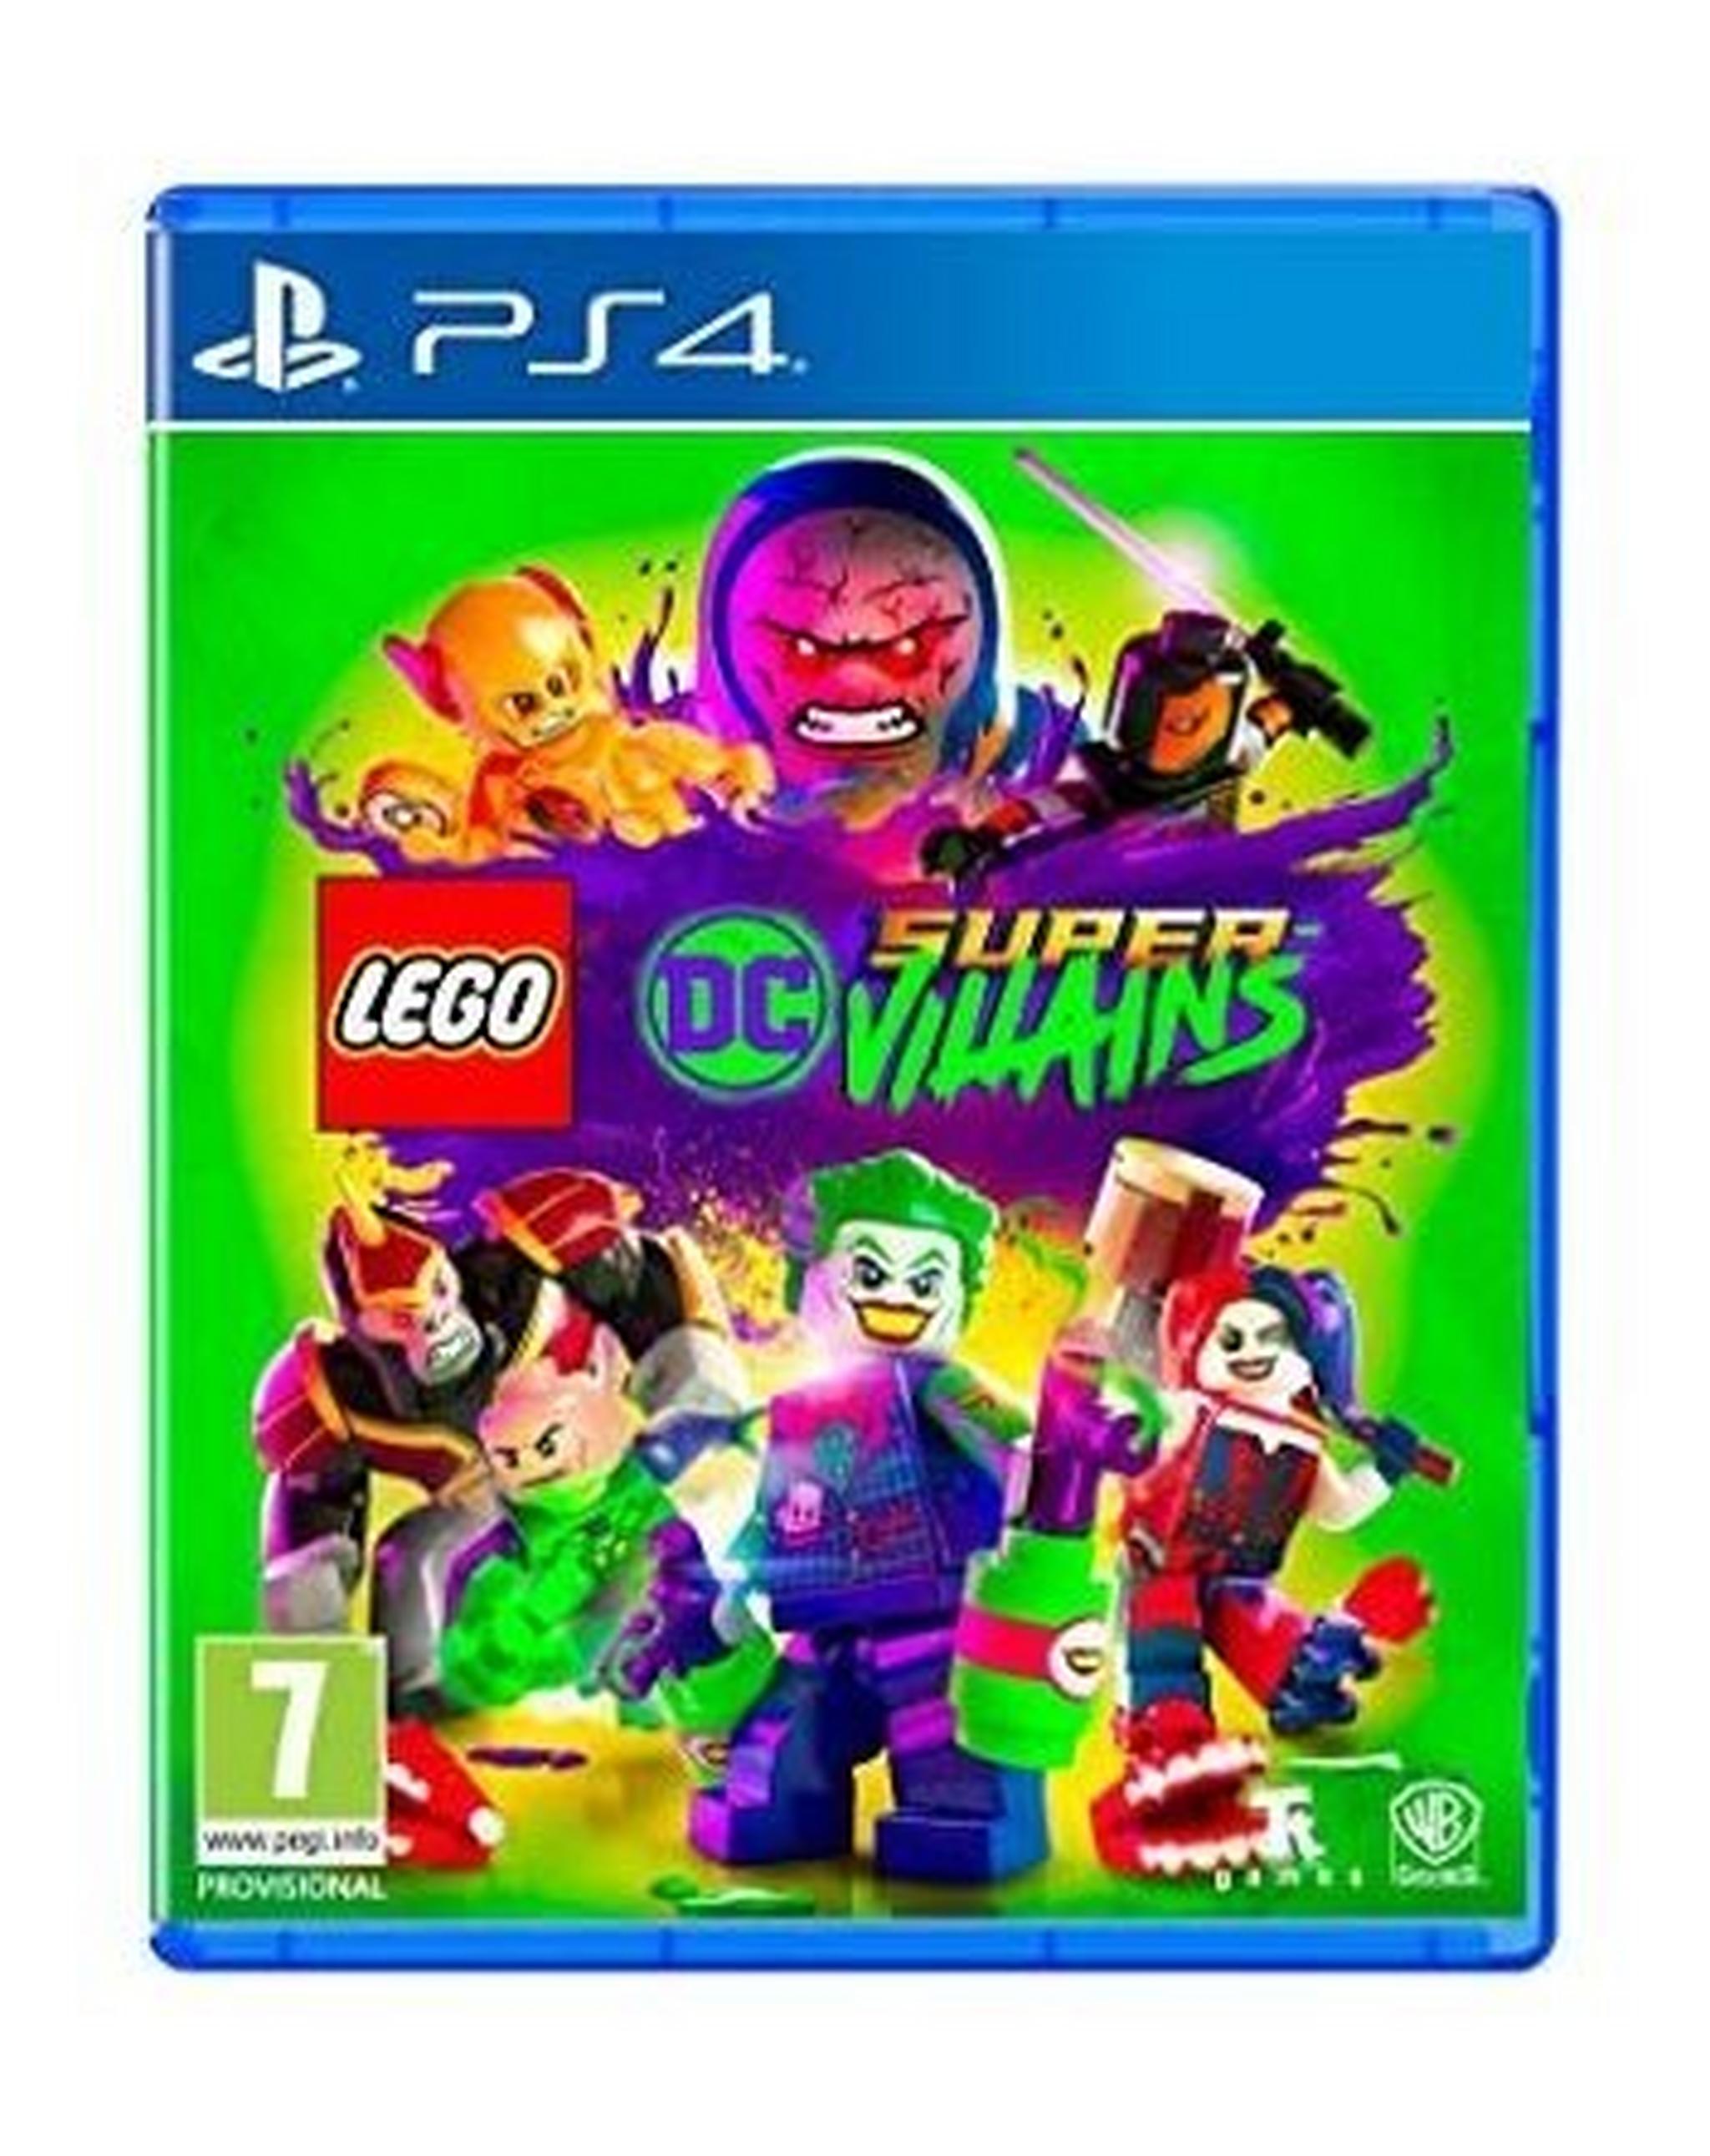 LEGO DC Super-Villains - PlayStation 4 Game